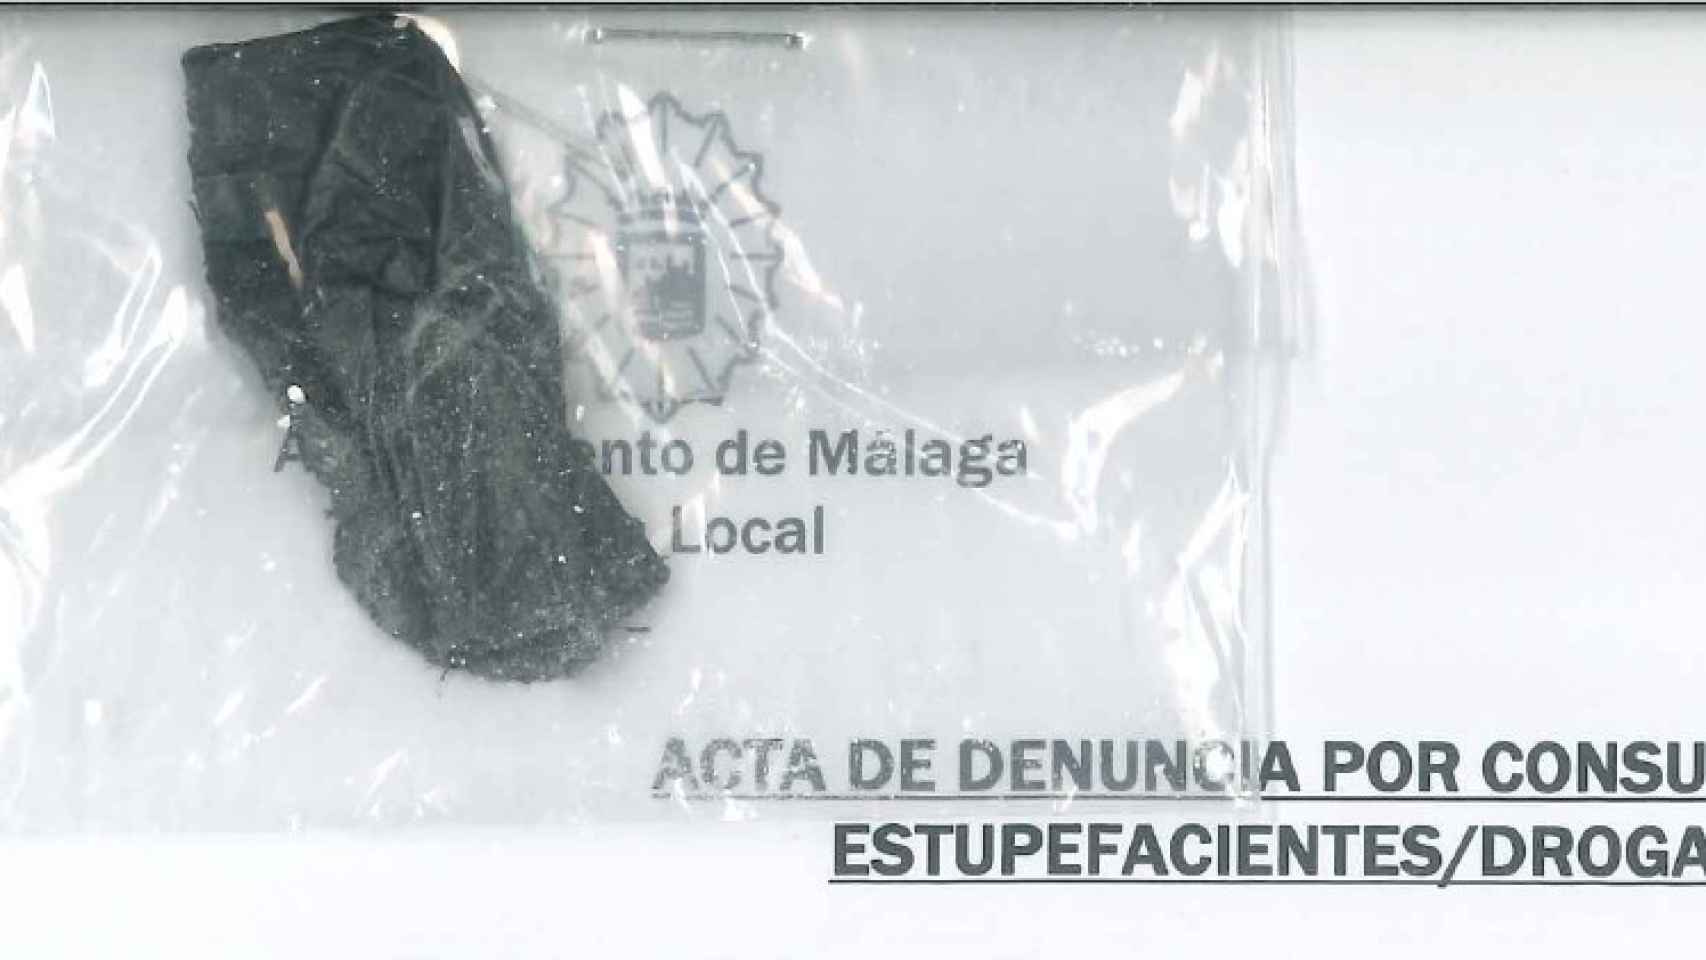 Agentes de la Policía Nacional y Policía Local de Málaga en un operativo.